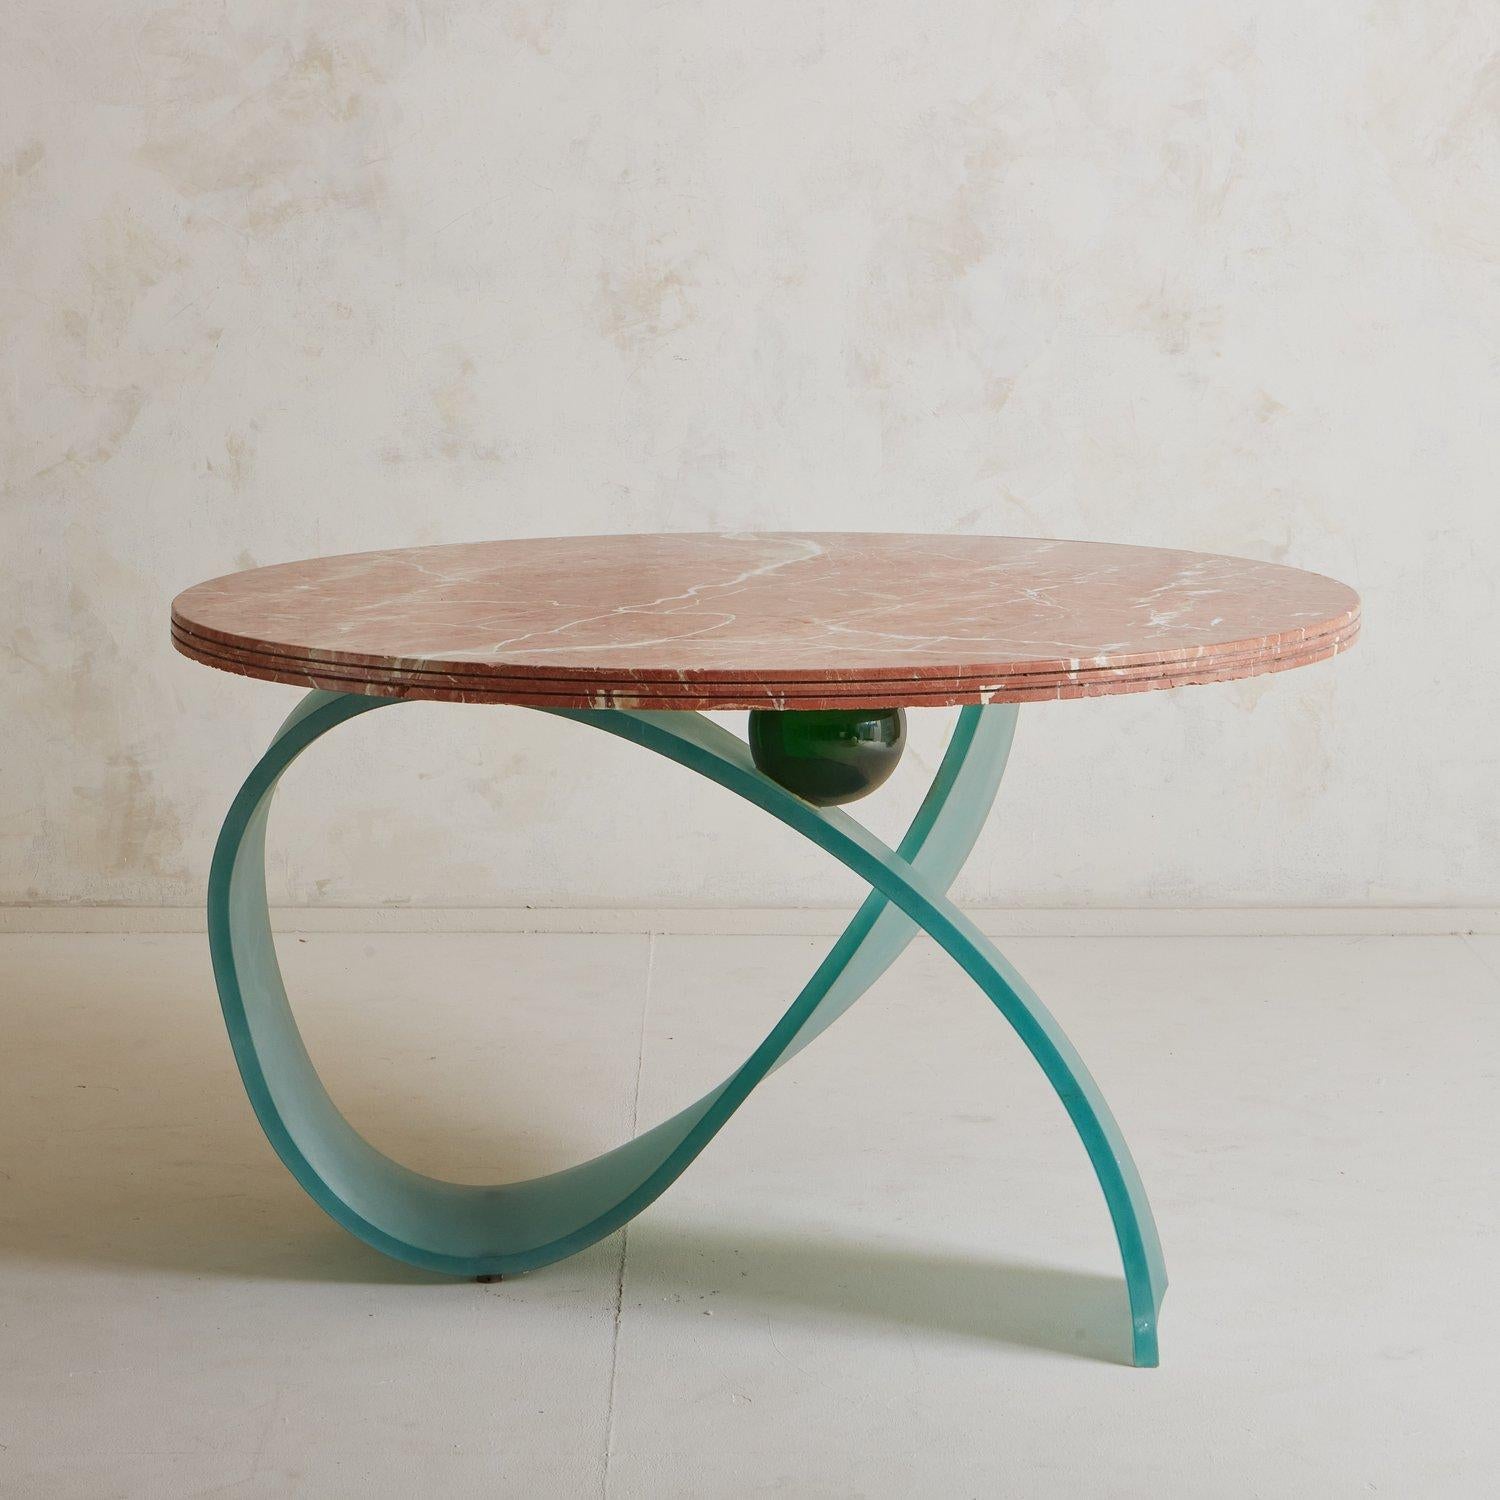 Table de salle à manger vintage avec un plateau rond construit avec trois blocs de marbre Rojo Coralito espagnol, avec de superbes veines crème et grises. Cette table unique a une base sculpturale en verre givré bleu avec une sphère verte. Source :